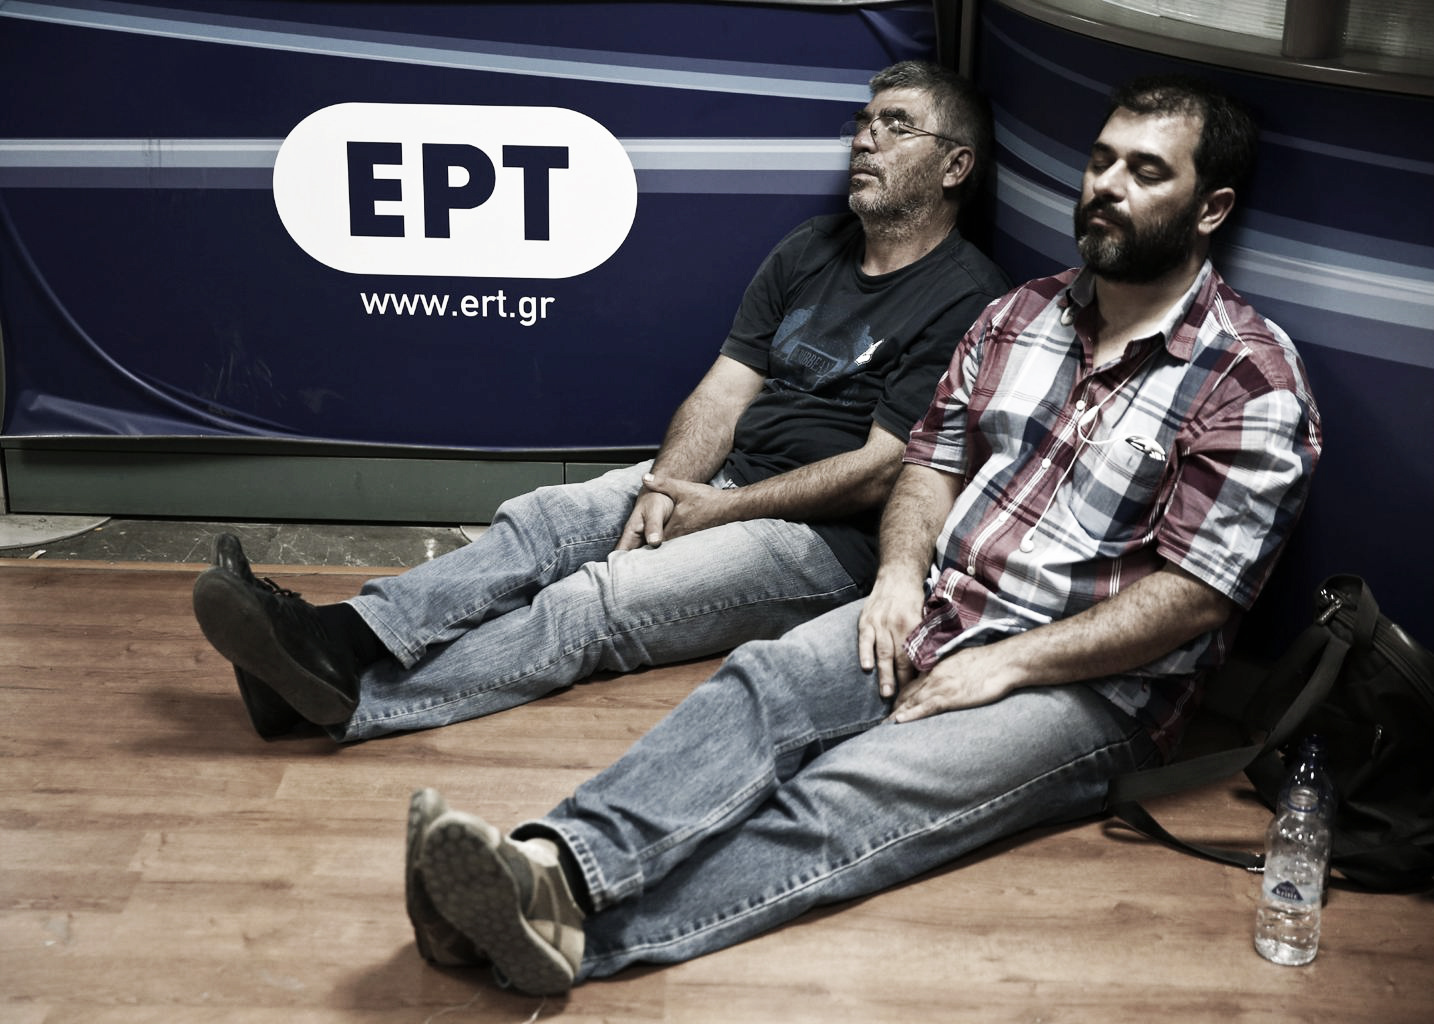 Grecia se queda sin televisión pública